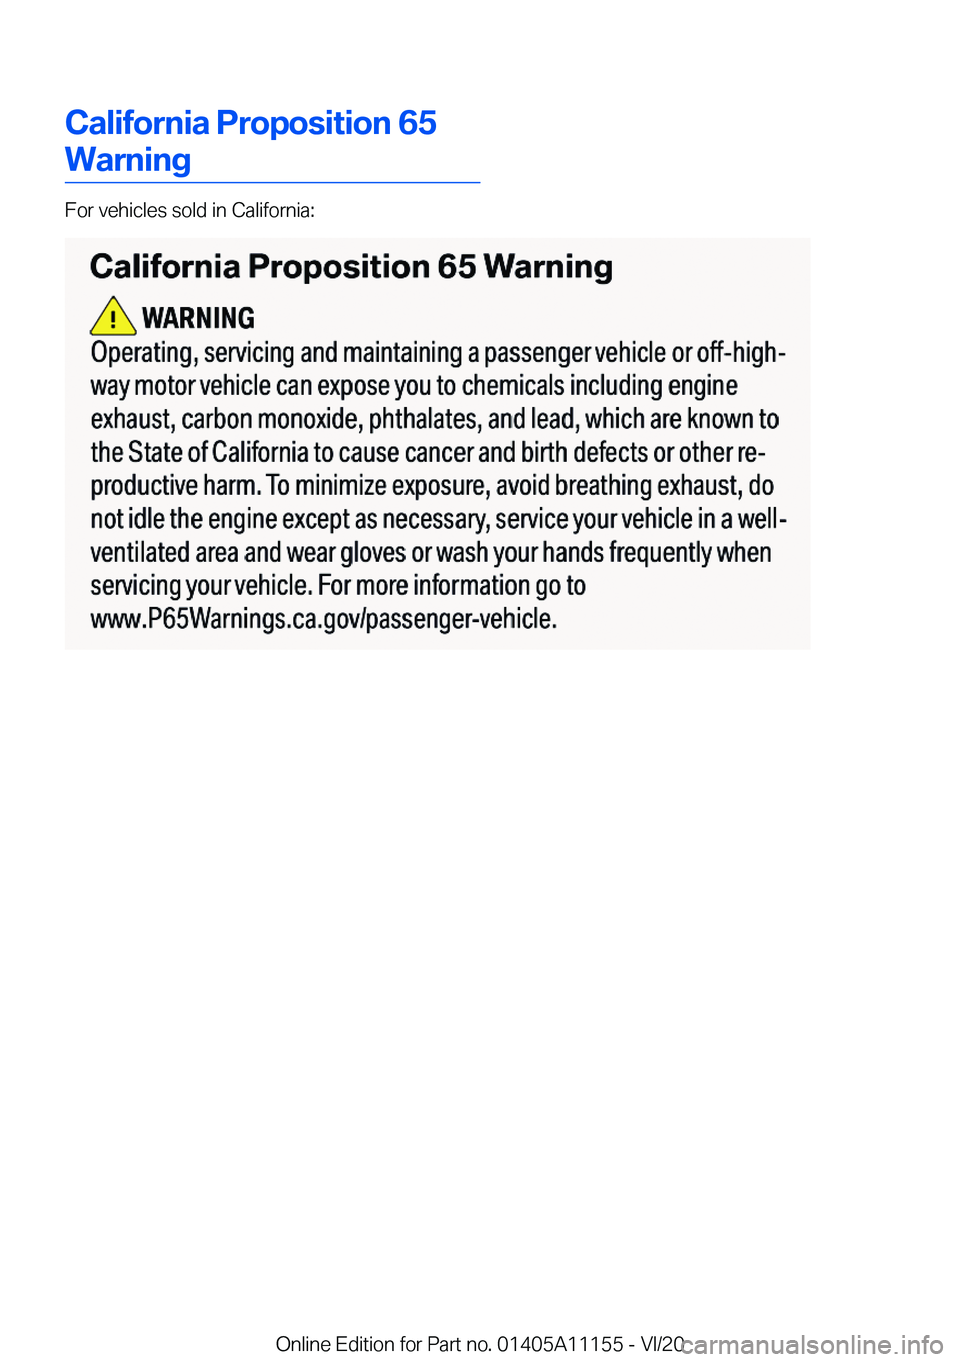 BMW 8 SERIES COUPE 2021  Owners Manual �C�a�l�i�f�o�r�n�i�a��P�r�o�p�o�s�i�t�i�o�n��6�5
�W�a�r�n�i�n�g
�F�o�r��v�e�h�i�c�l�e�s��s�o�l�d��i�n��C�a�l�i�f�o�r�n�i�a�:
�O�n�l�i�n�e��E�d�i�t�i�o�n��f�o�r��P�a�r�t��n�o�.��0�1�4�0�5�A�